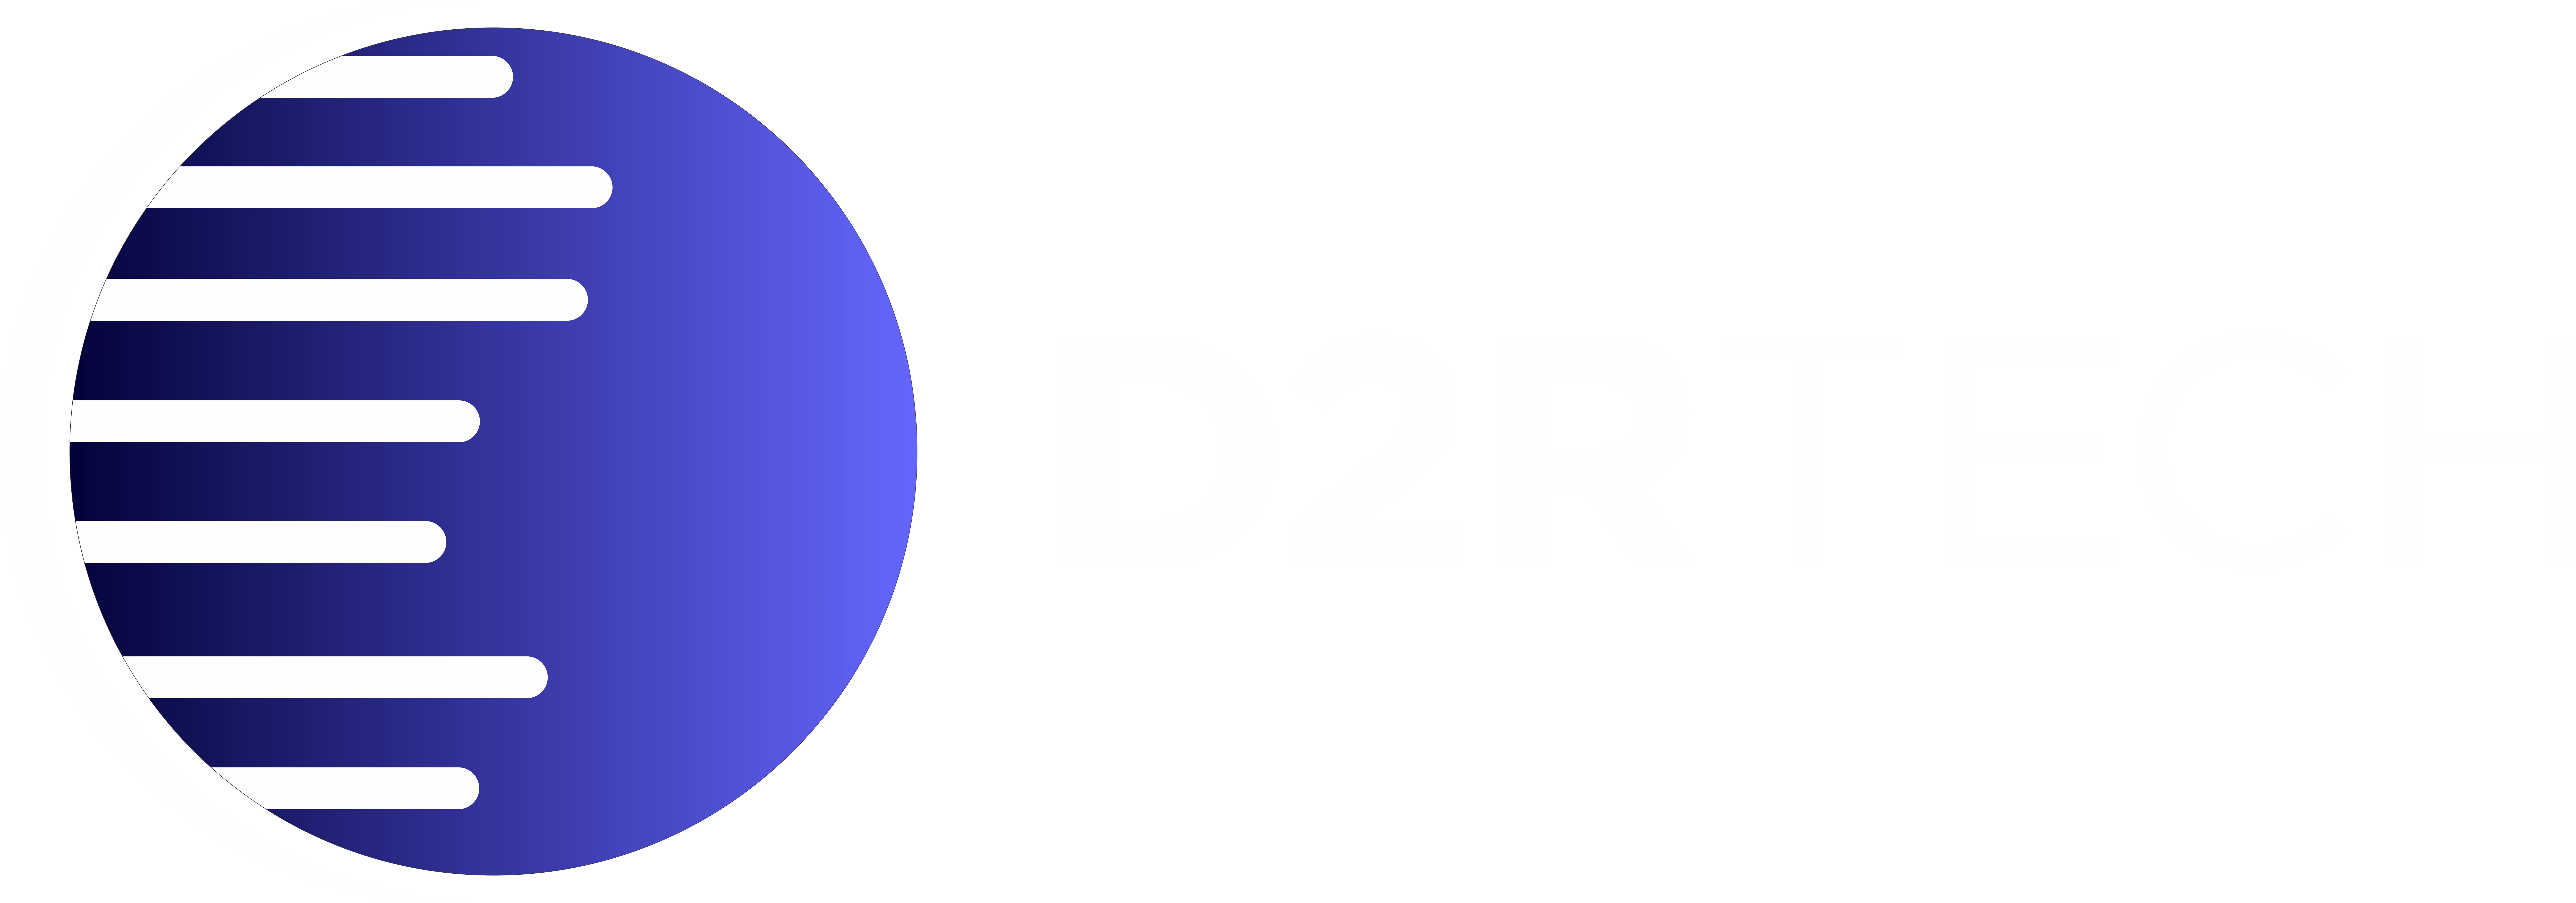 D2rTEch Site Logo